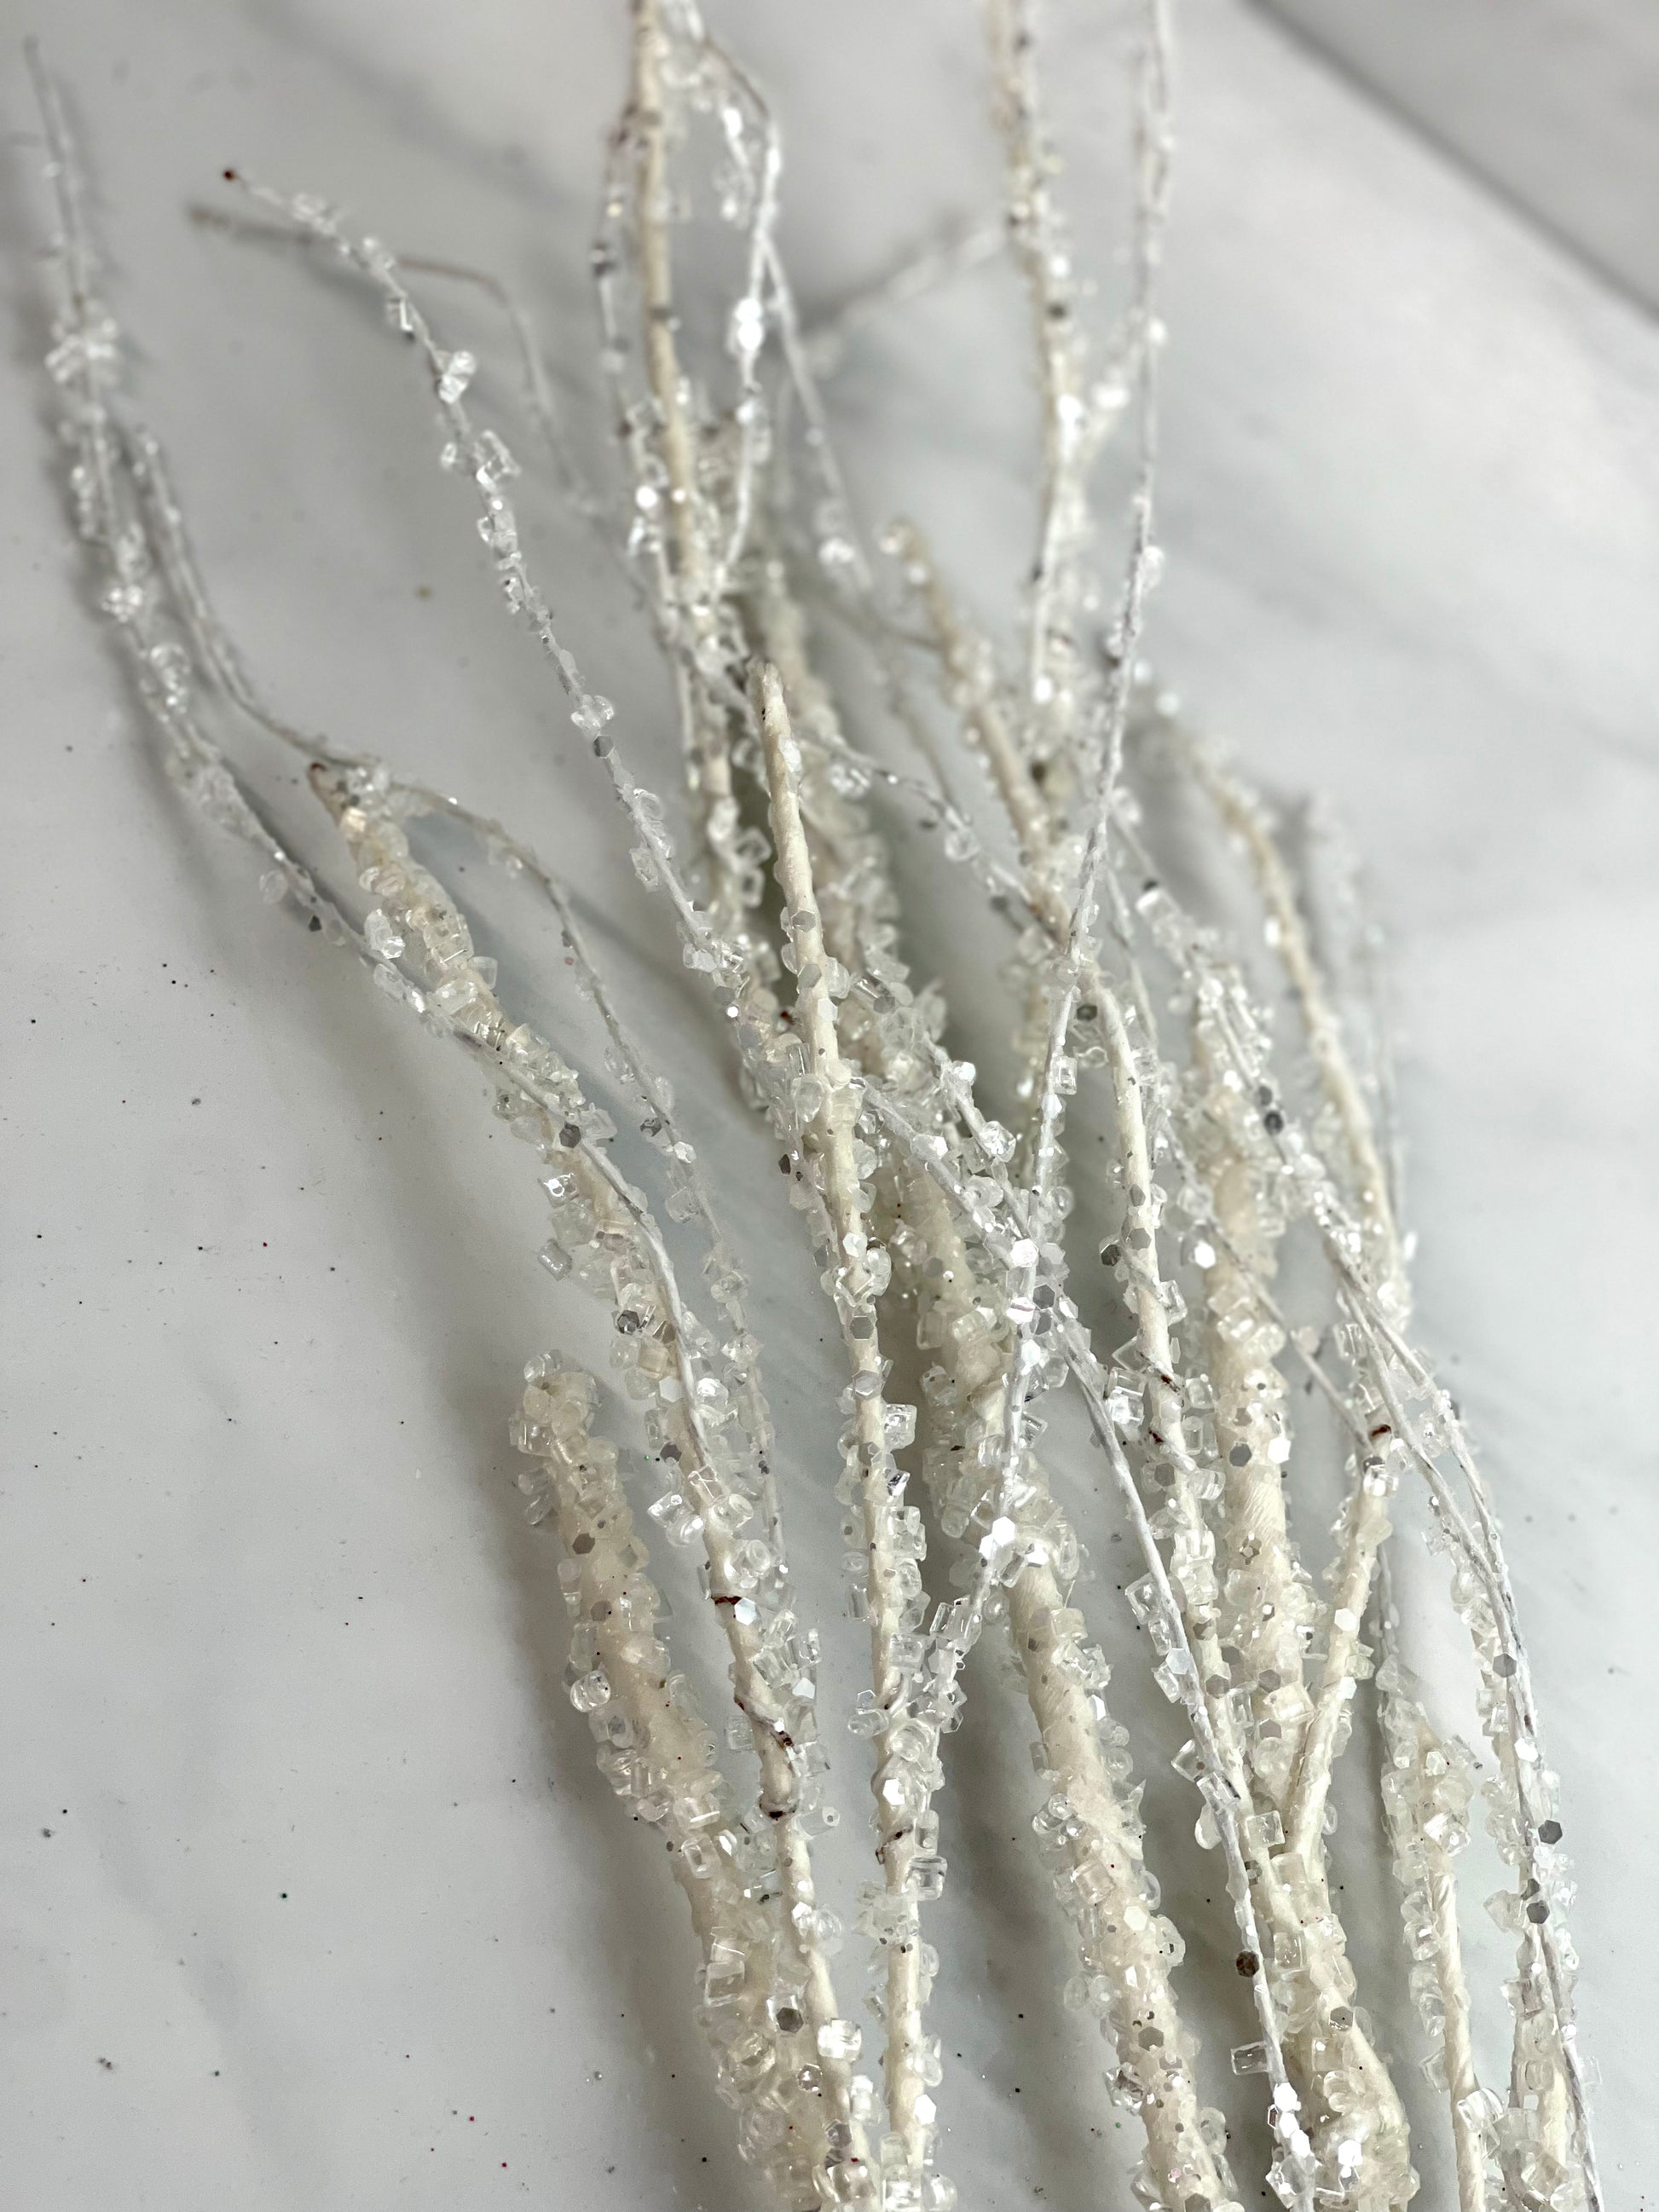 5' Iced/Glittered Plastic Twig Garland ( XAG065-SILVER ) – INTERNATIONAL  SILK